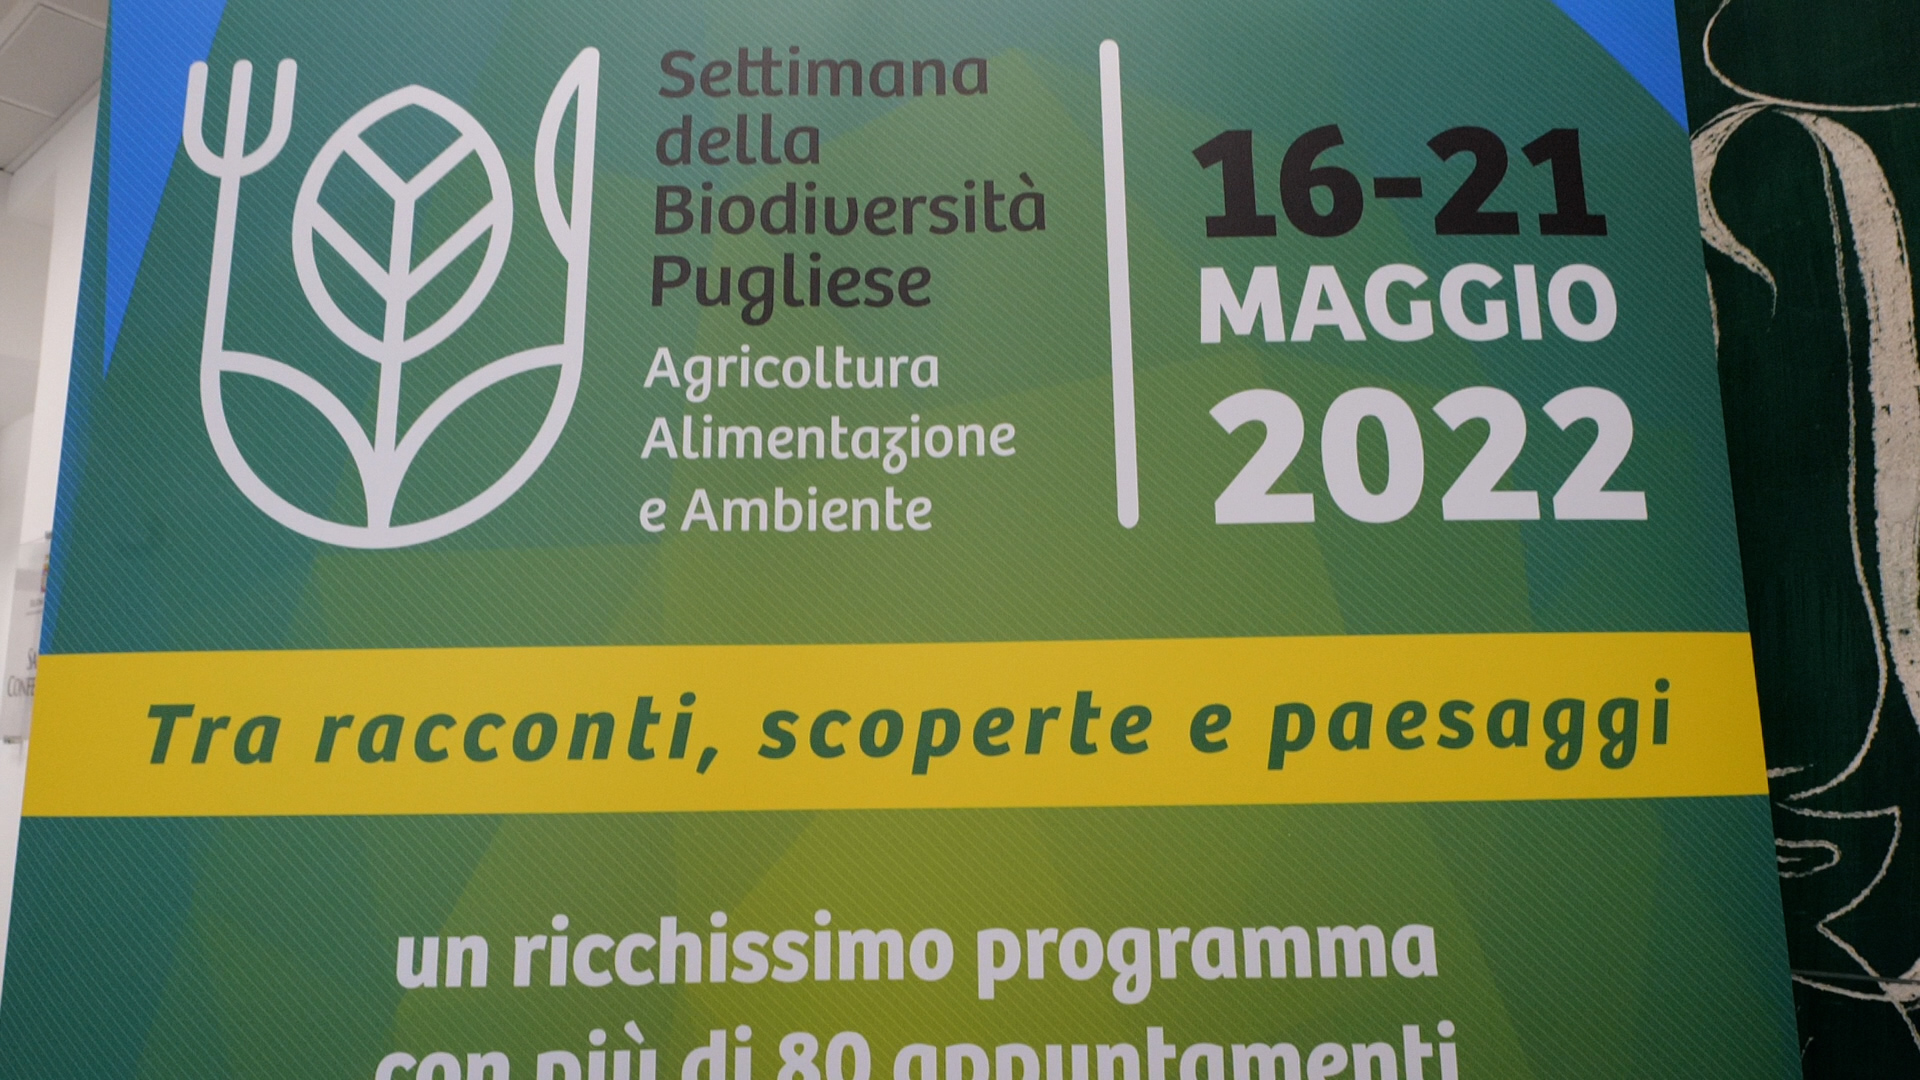 Galleria La Puglia celebra la 'Settimana della Biodiversità 2022': presentato il programma degli eventi - Diapositiva 1 di 6